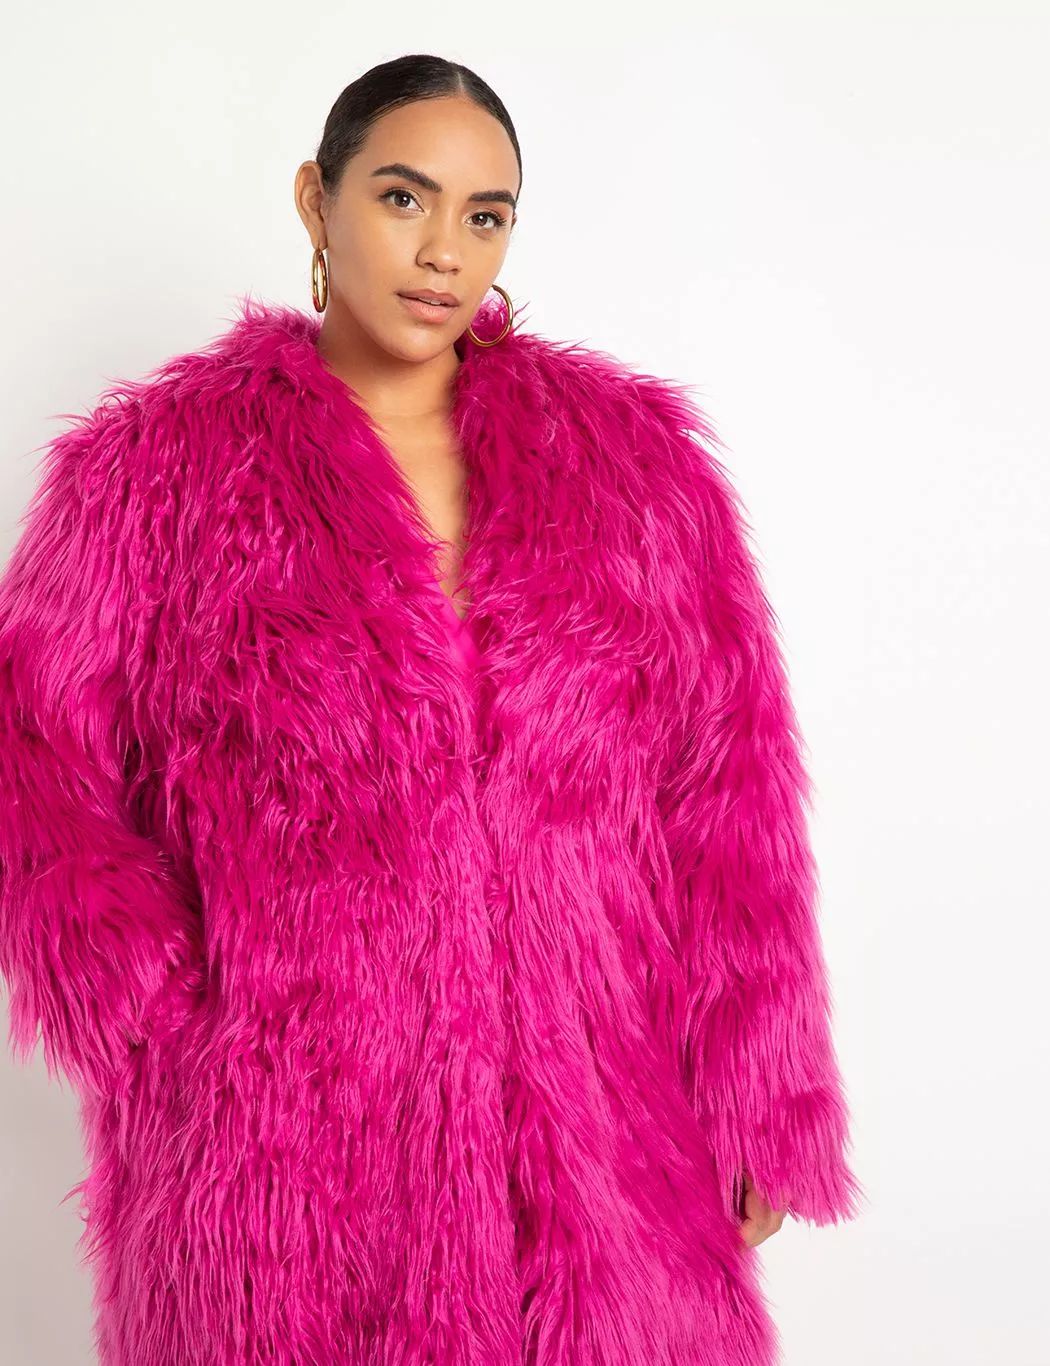 Oversized Faux Fur Coat | Women's Plus Size Coats + Jackets | ELOQUII | Eloquii